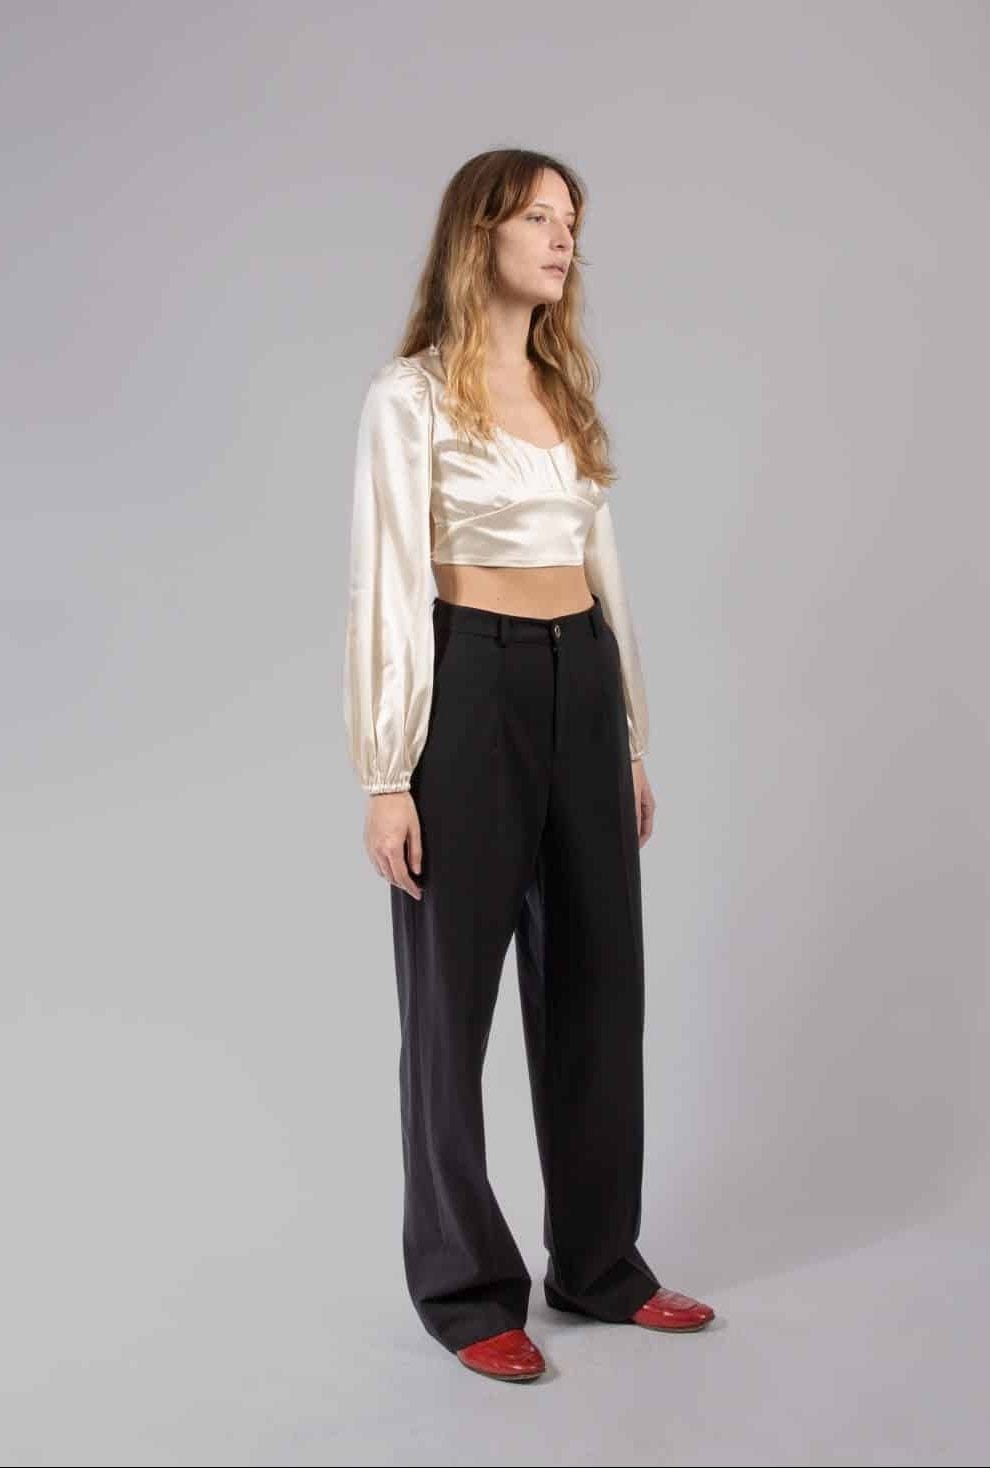 Col·lecció Suldaze Pantalons i pantalons curts Isabel pantalons negres moda sostenible moda ètica